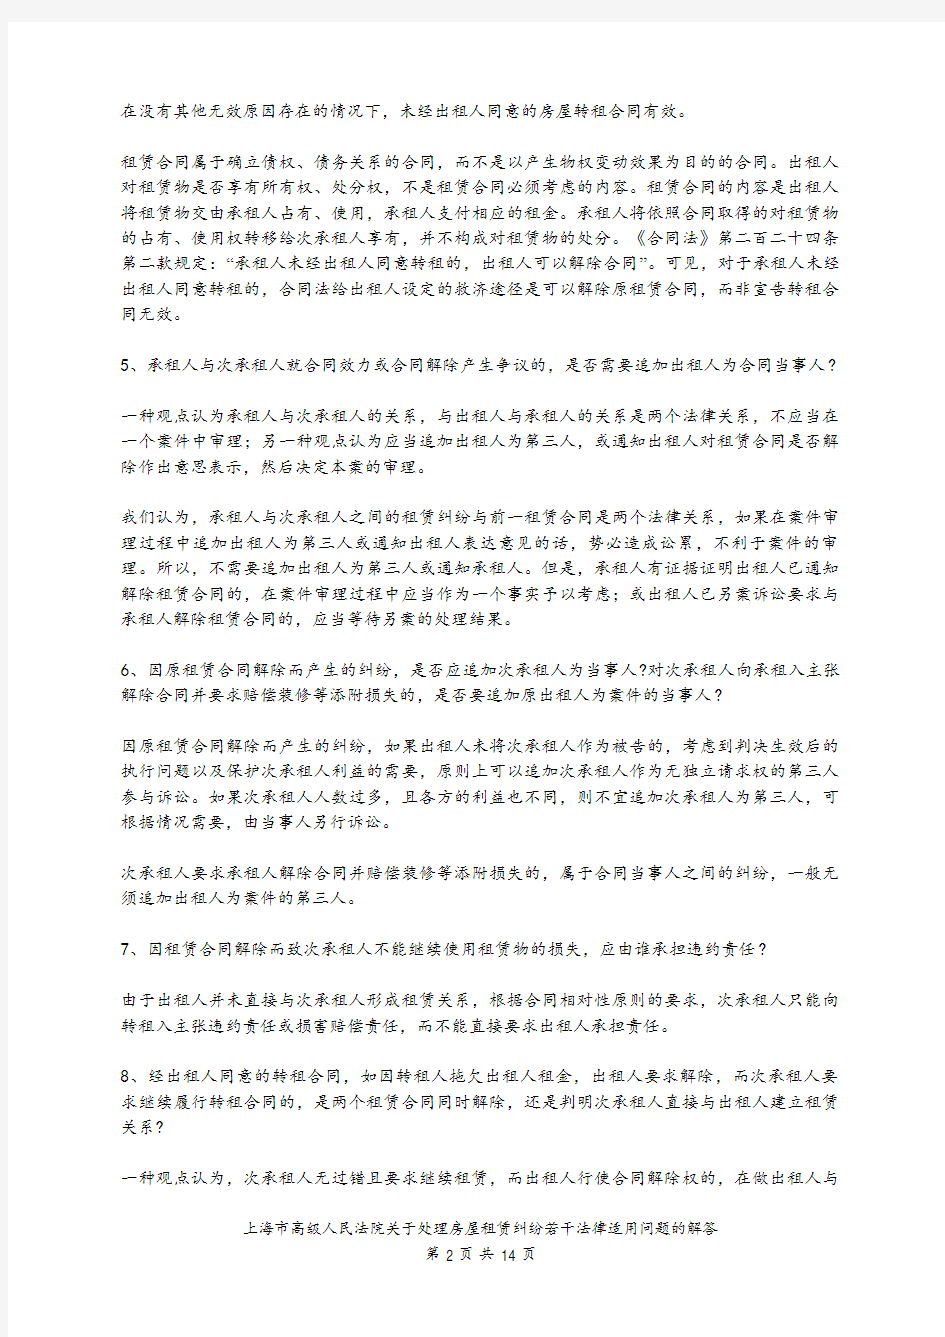 上海市高级人民法院关于处理房屋租赁纠纷若干法律适用问题的解答